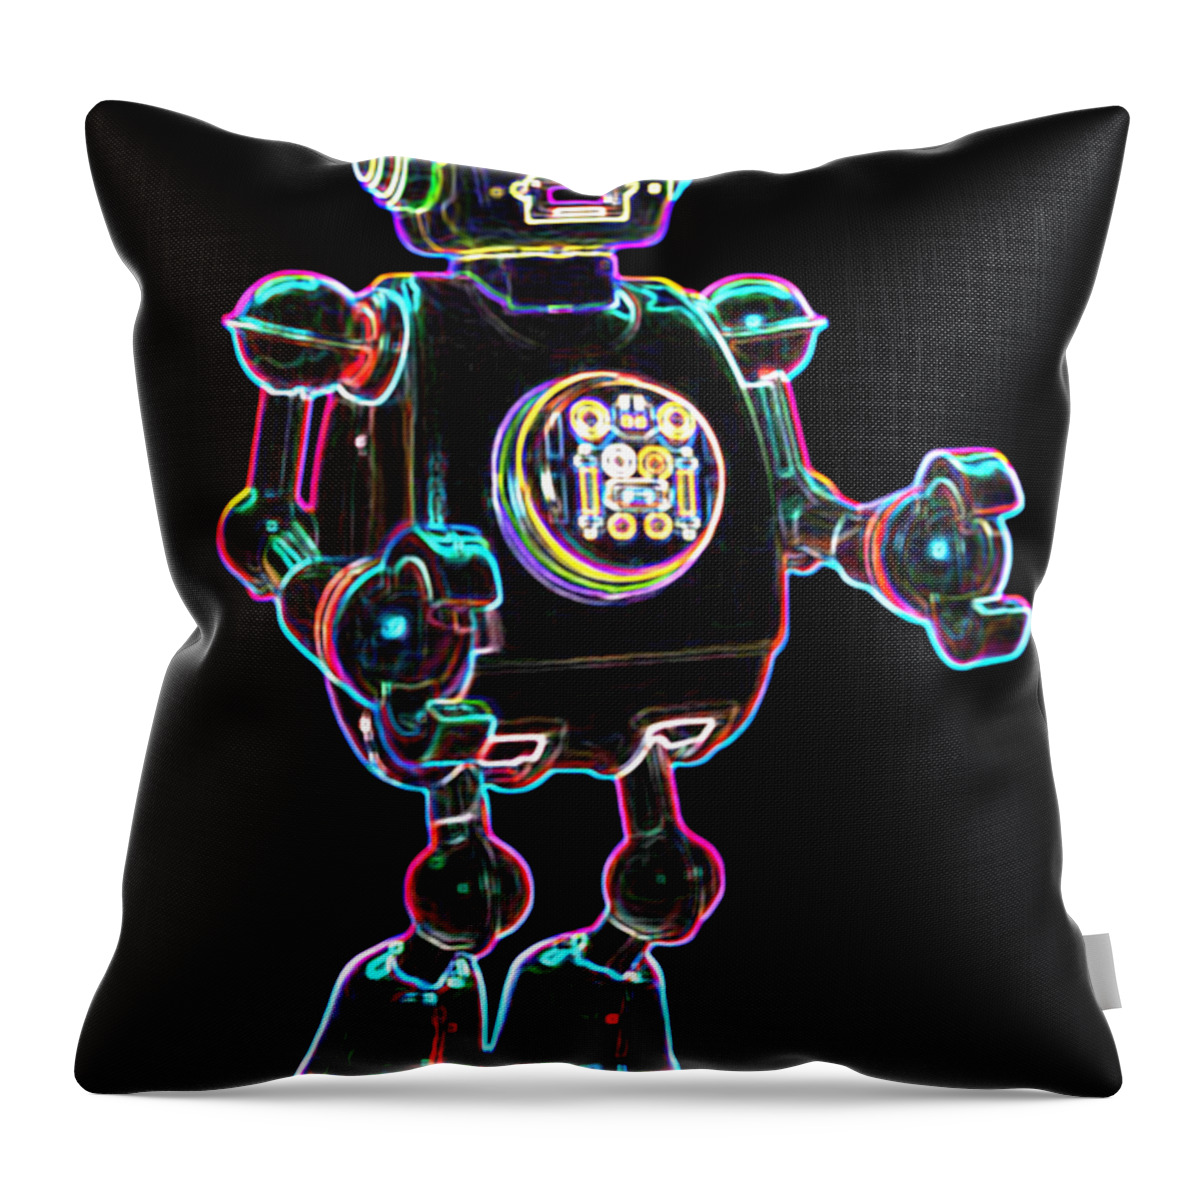 Robot Throw Pillow featuring the digital art Planet Robot by DB Artist